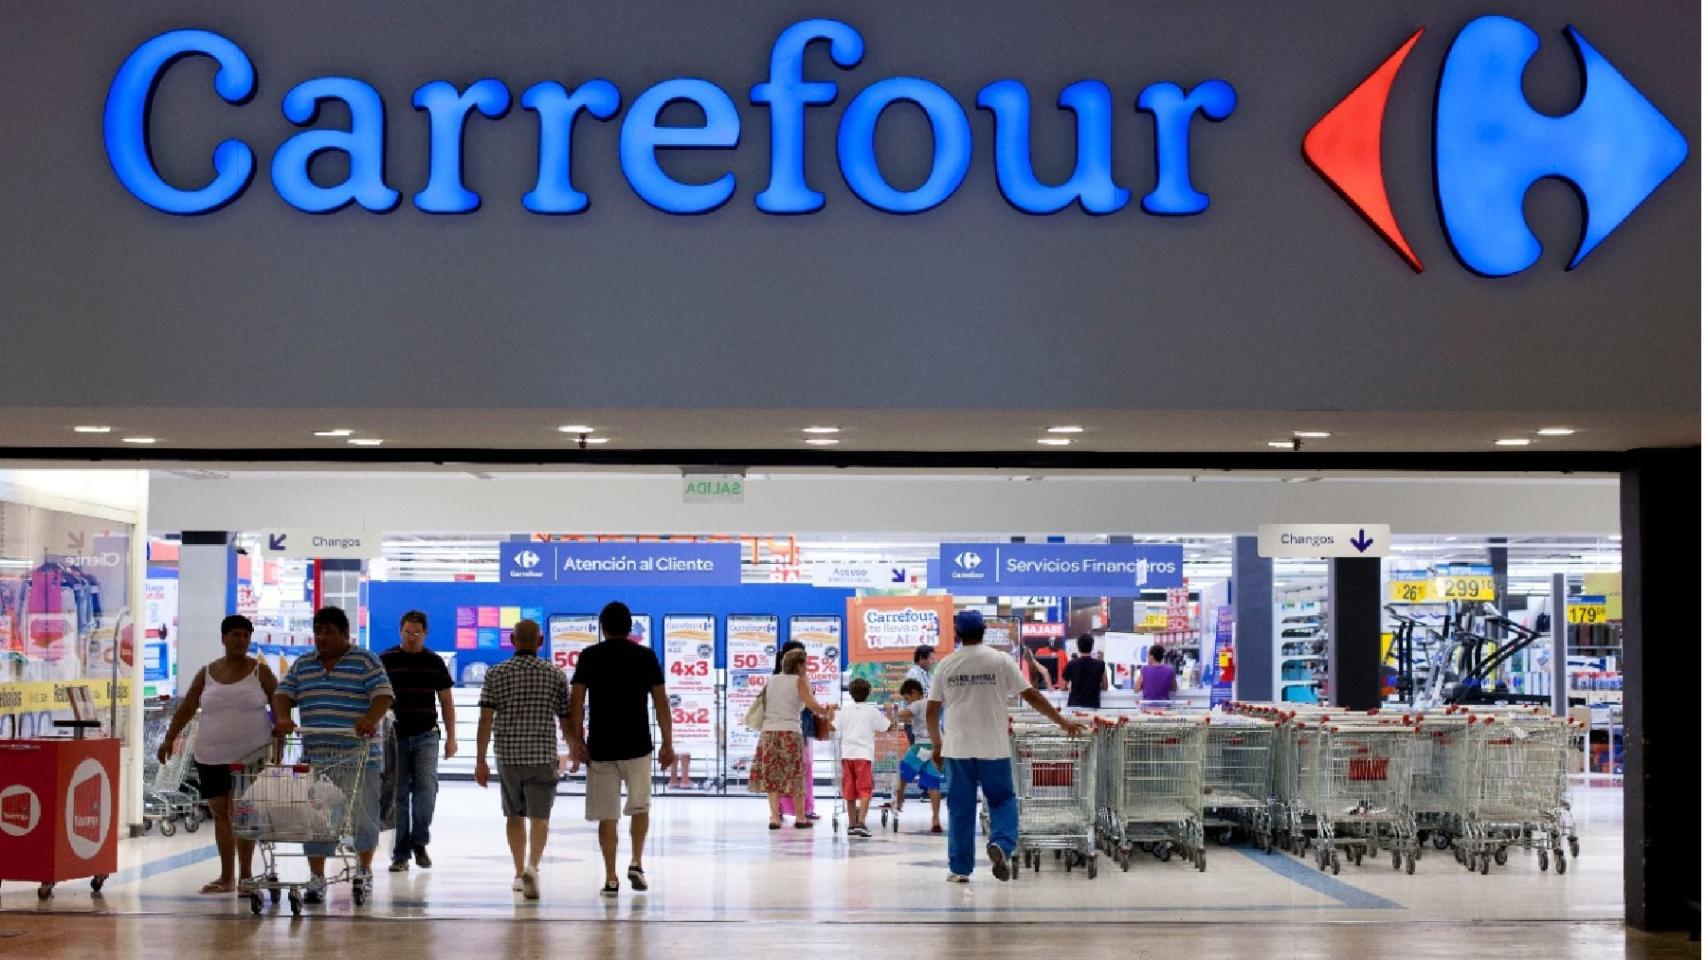 Fachada de la cadena de supermercados Carrefour.